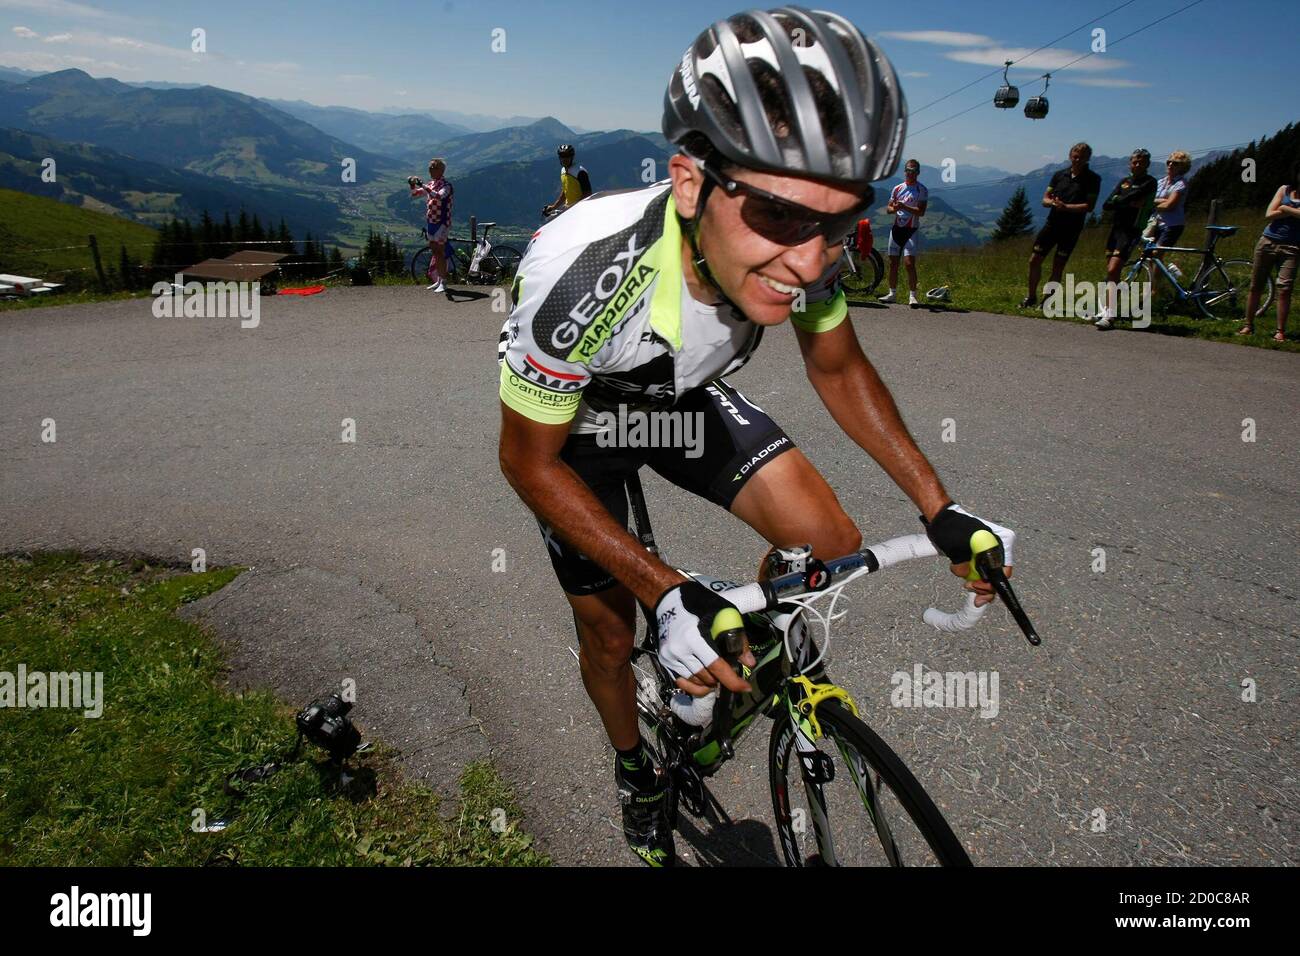 El piloto del equipo Geox Carlos Sastre de España compite durante la segunda etapa de la 63ª gira ciclista en Kitzbuehel 4 julio de 2011. REUTERS/Dominic - Tags: